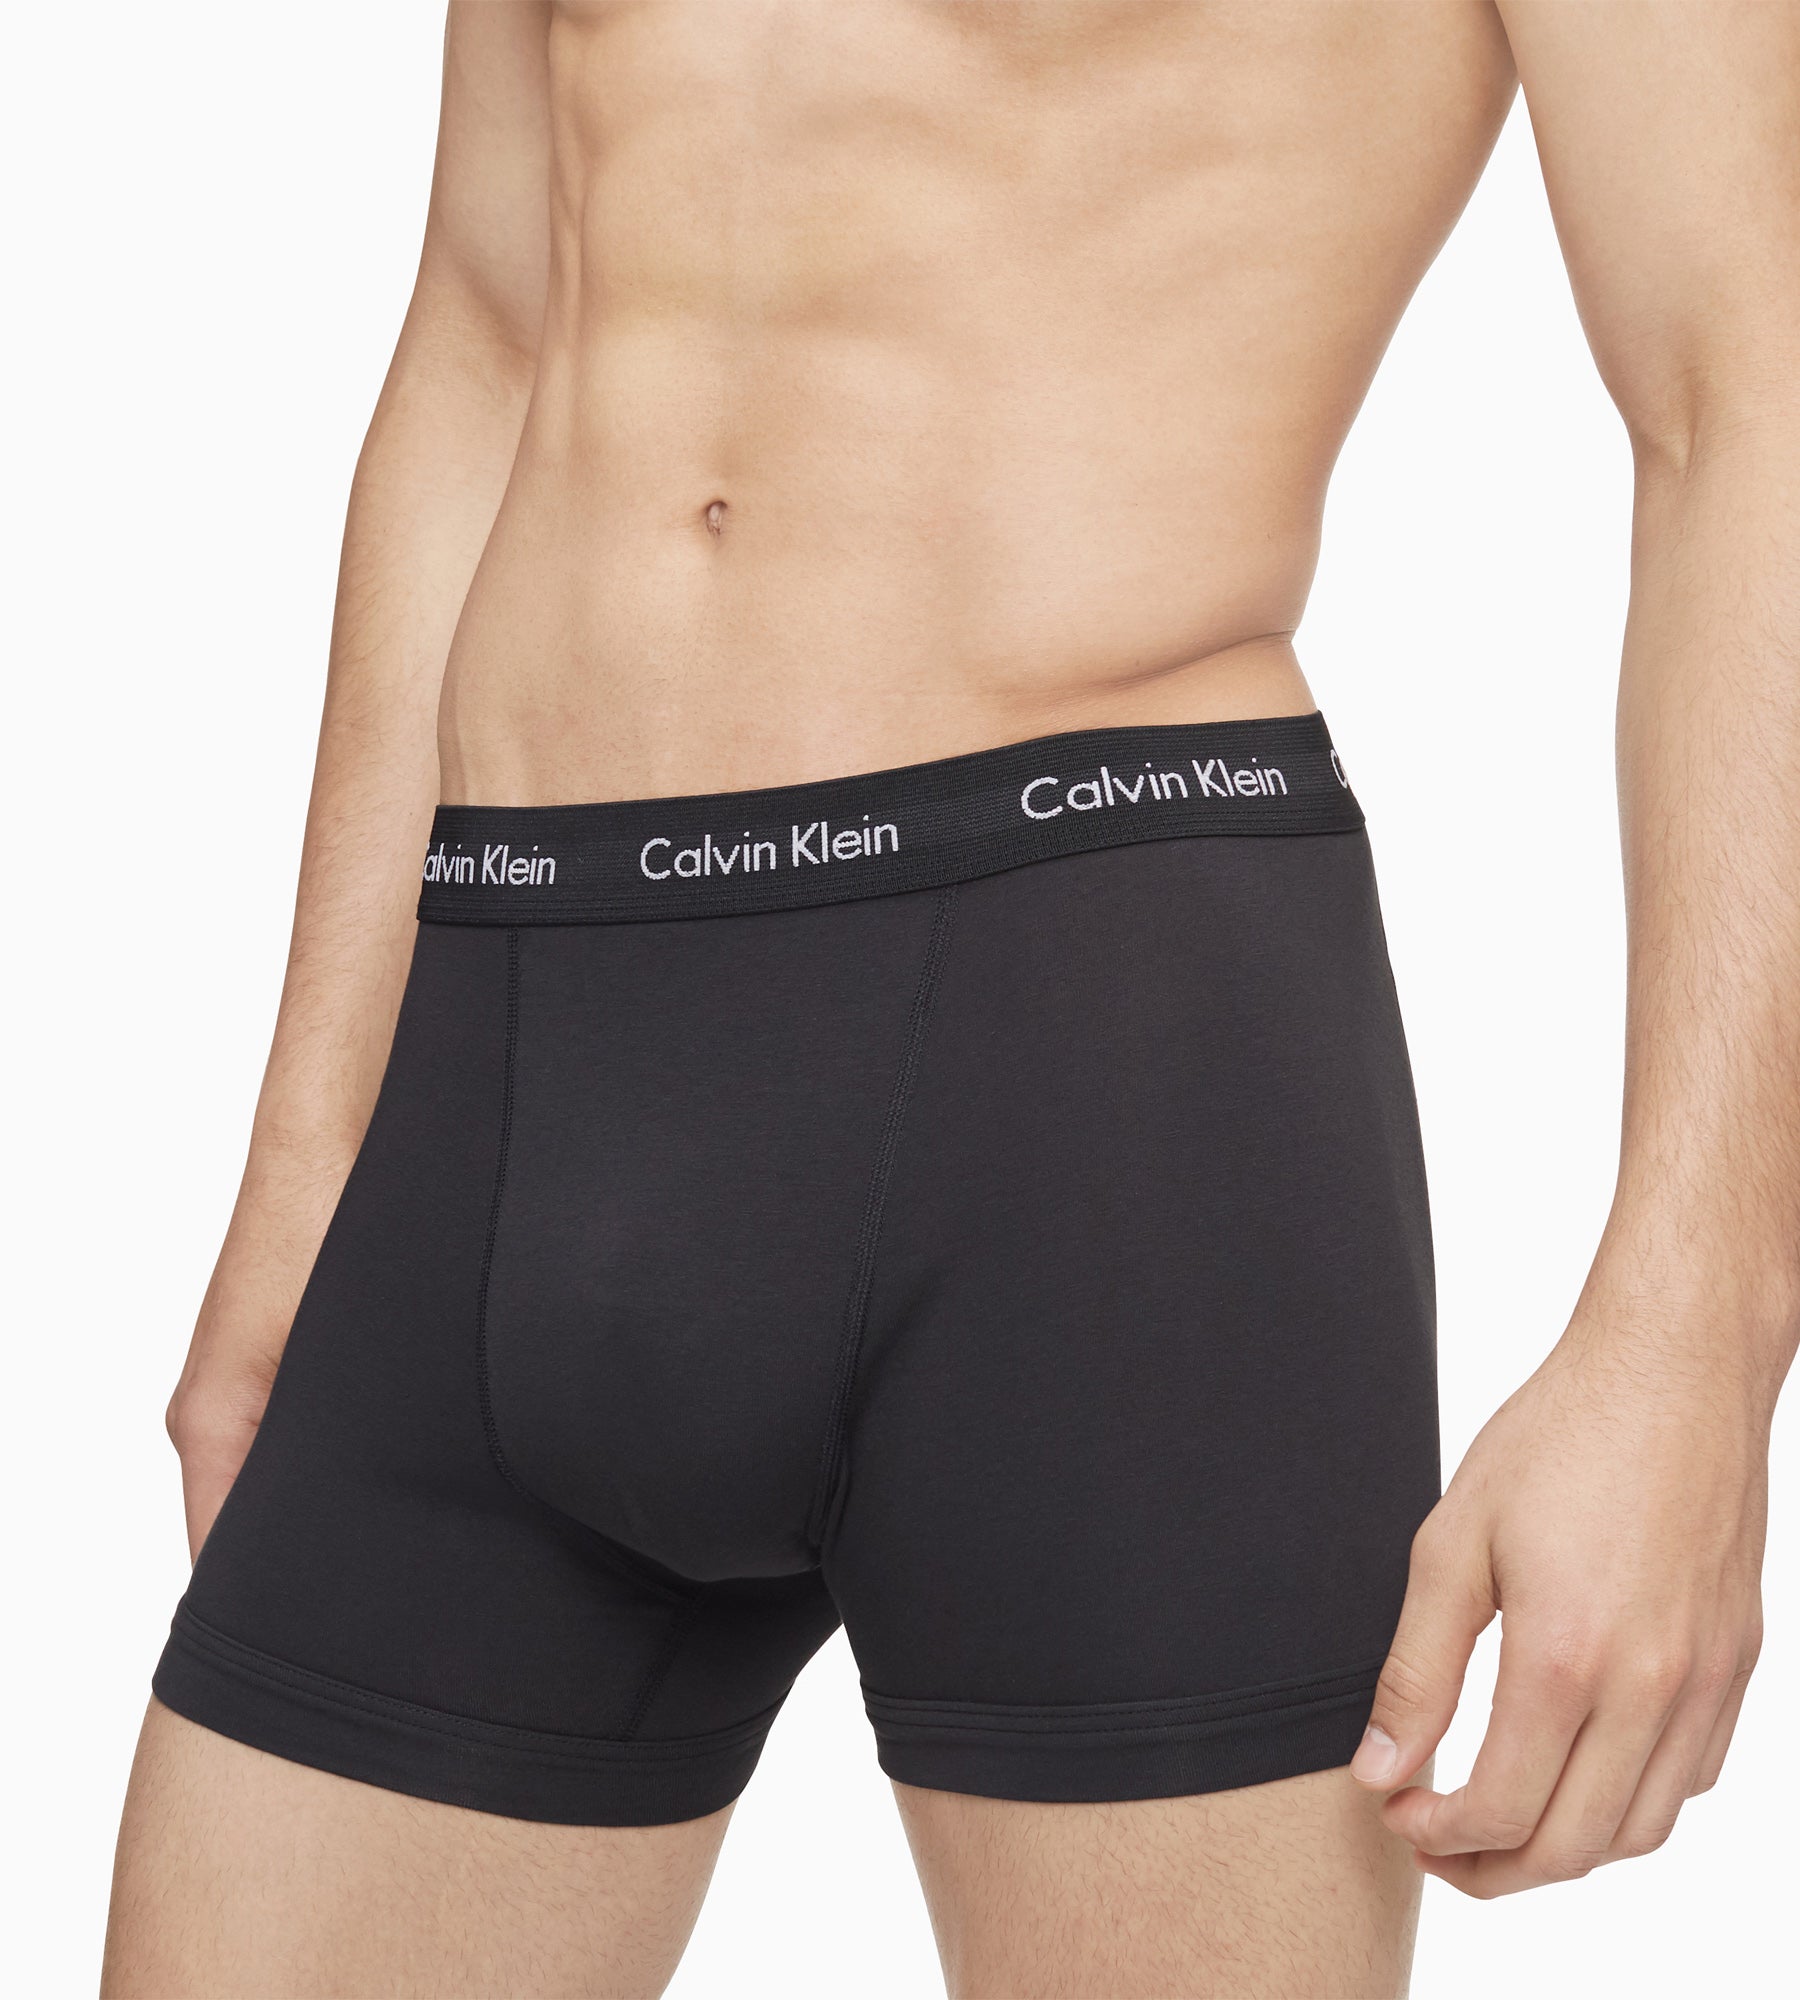 Calvin Klein Underwear - Cool - 0 tips